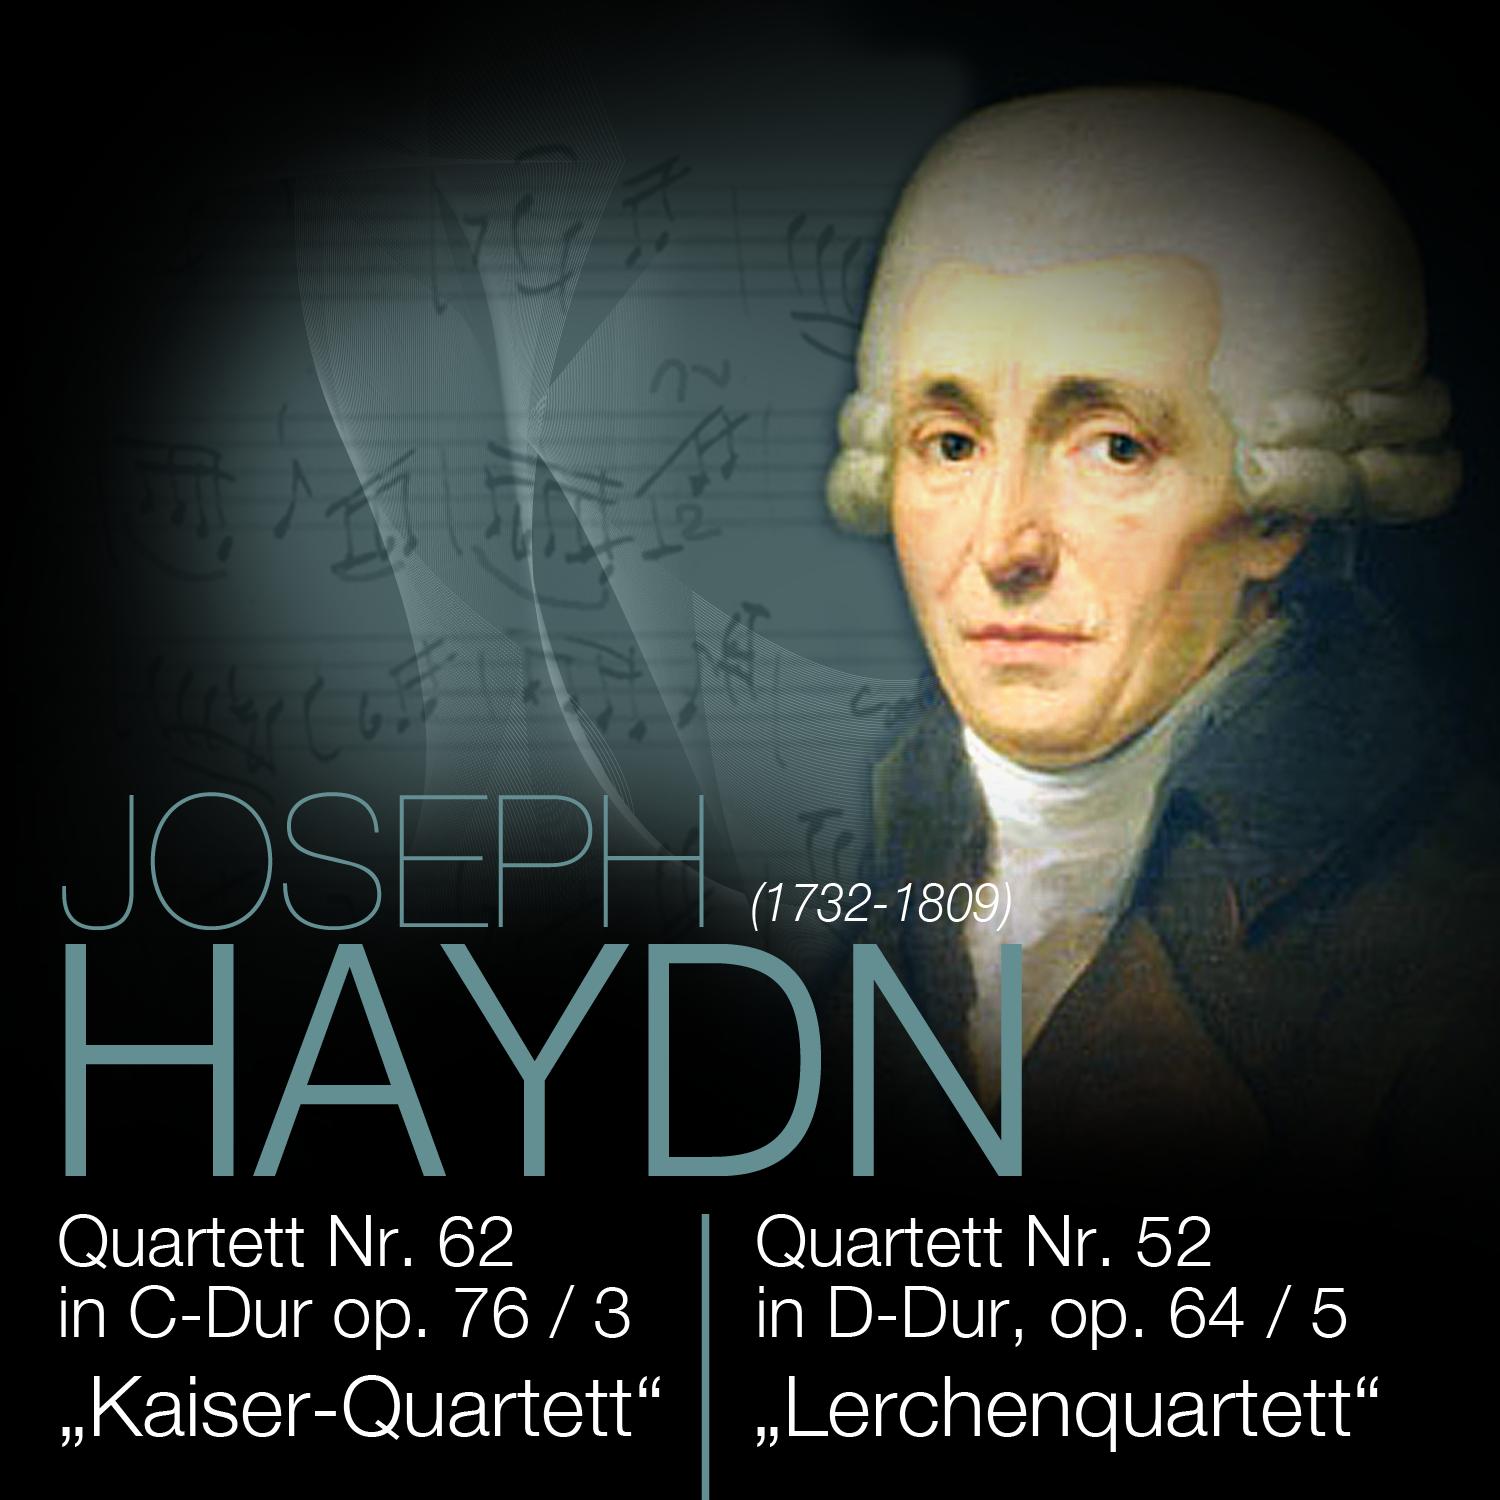 Quartett Nr. 62 in C-Dur op. 76 / 3, Allegro